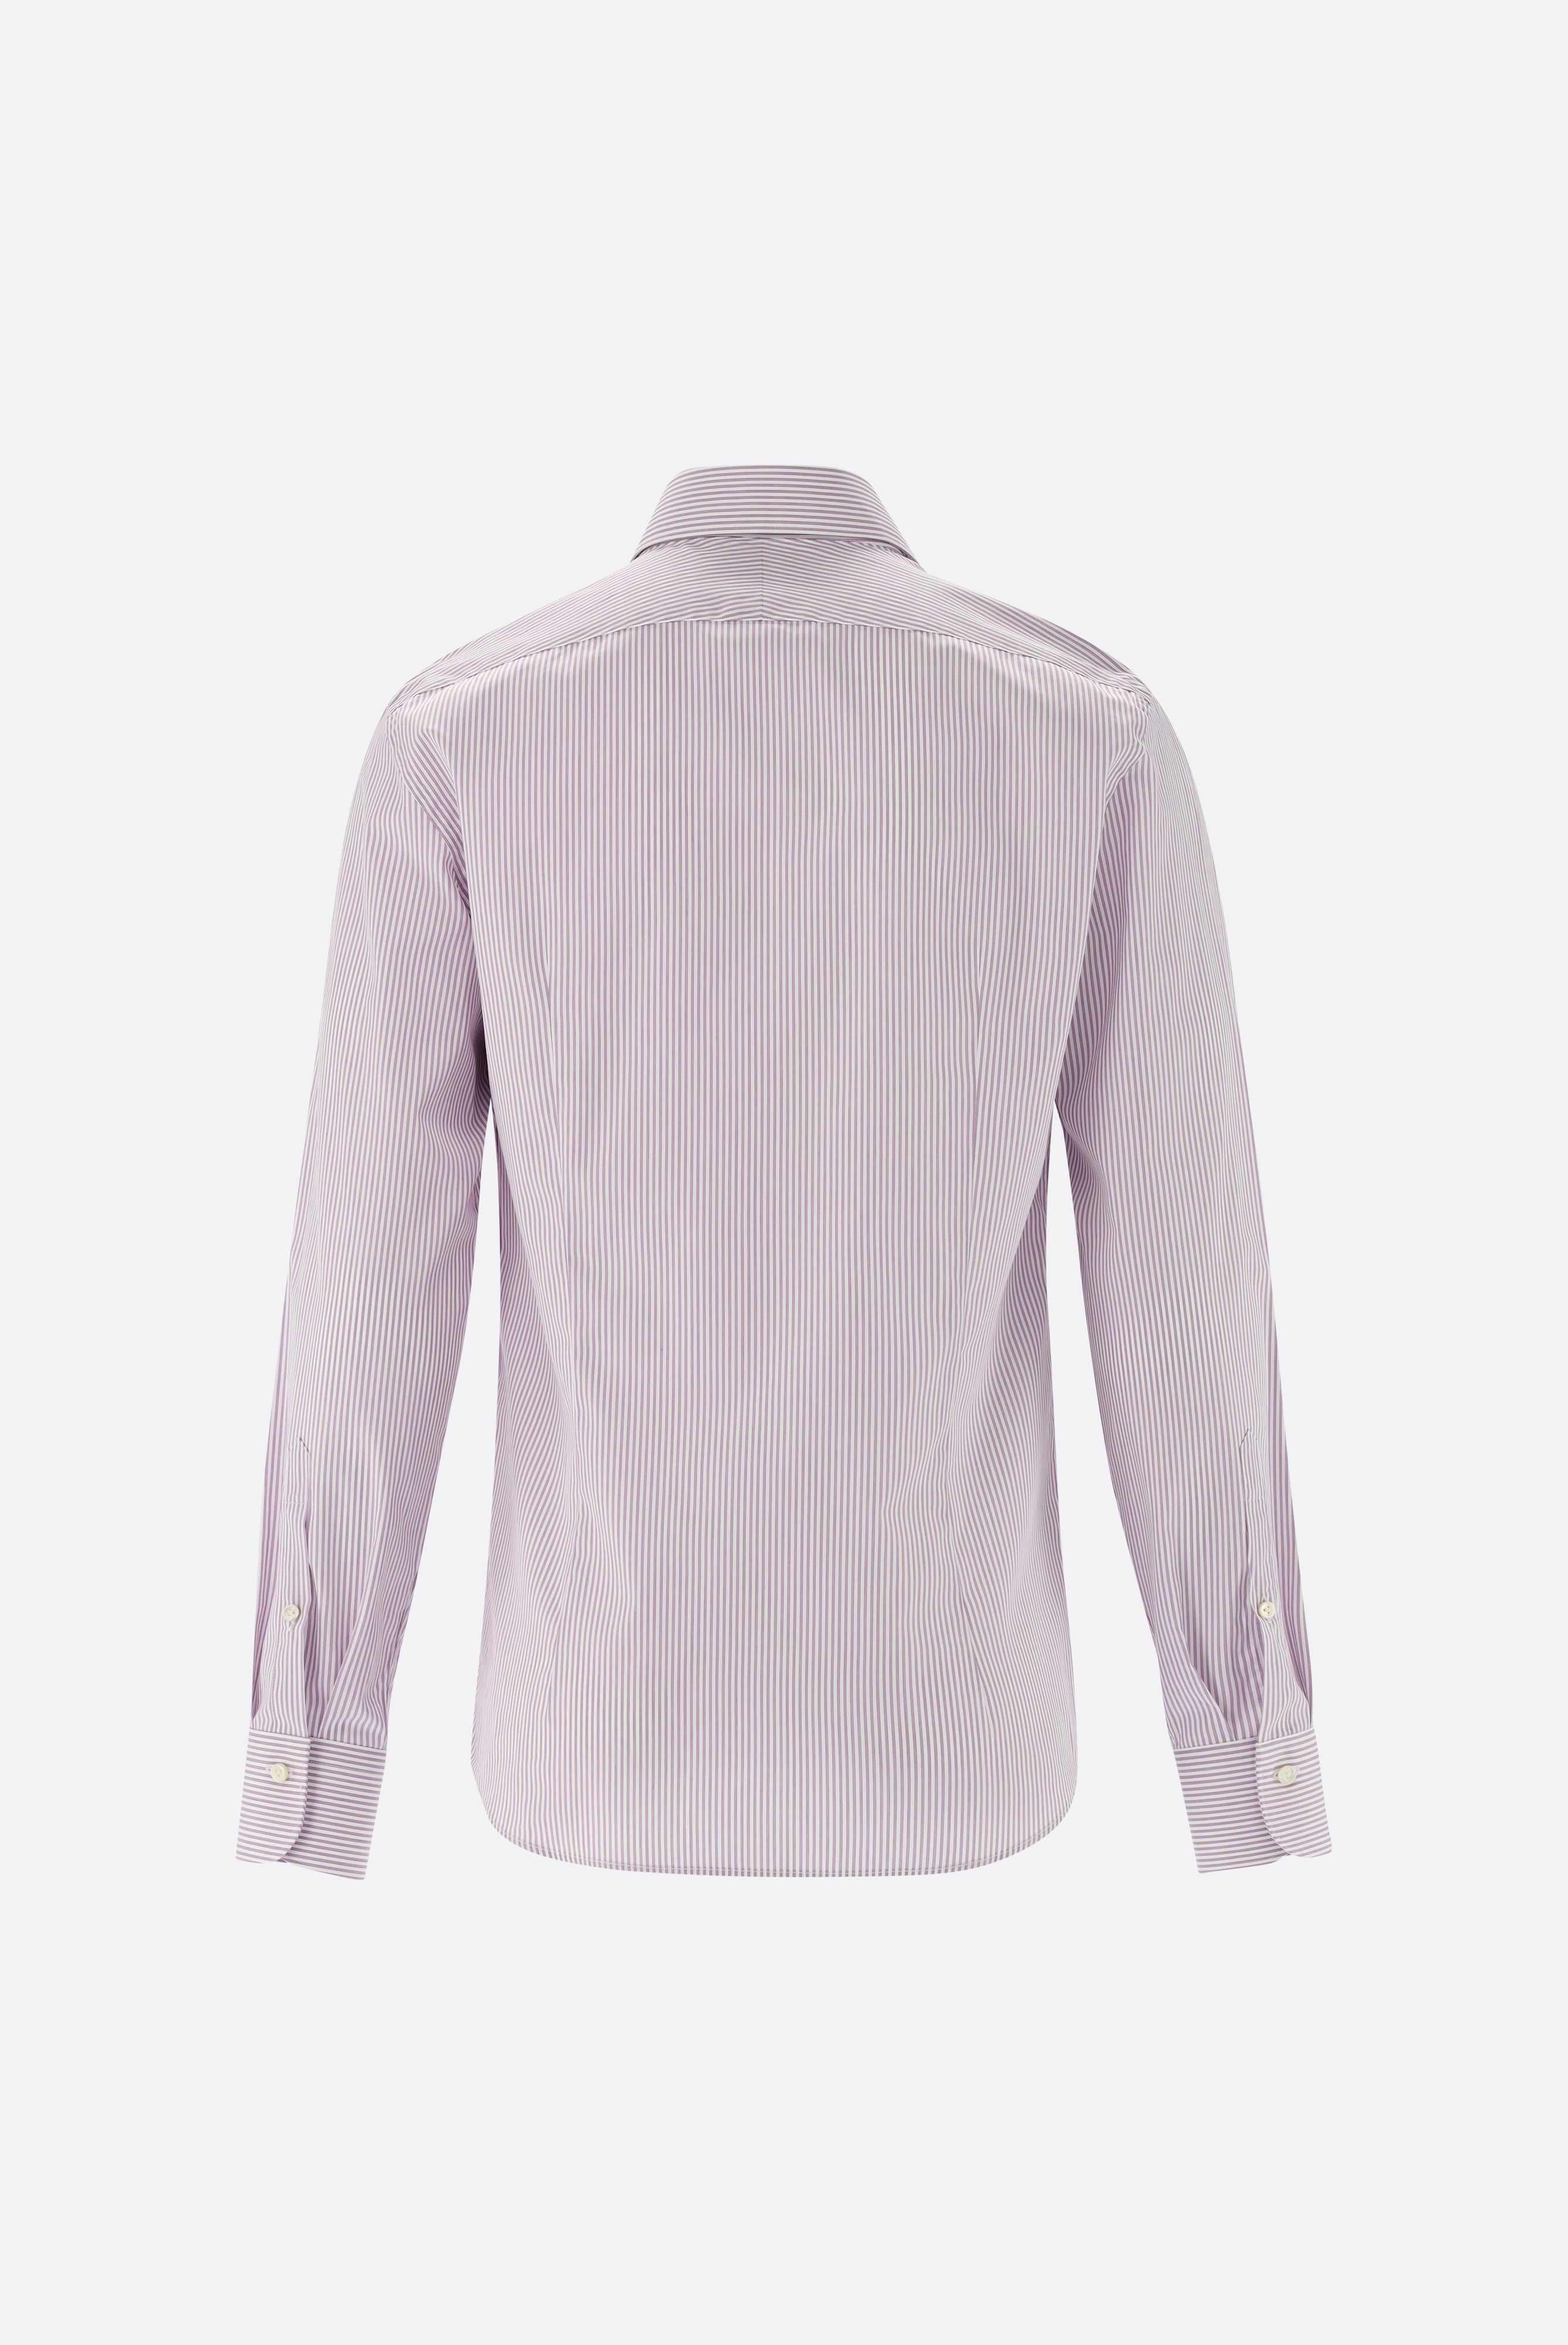 Business Hemden+Twill Hemd mit Streifen Slim Fit+20.2500.NV.161093.620.39